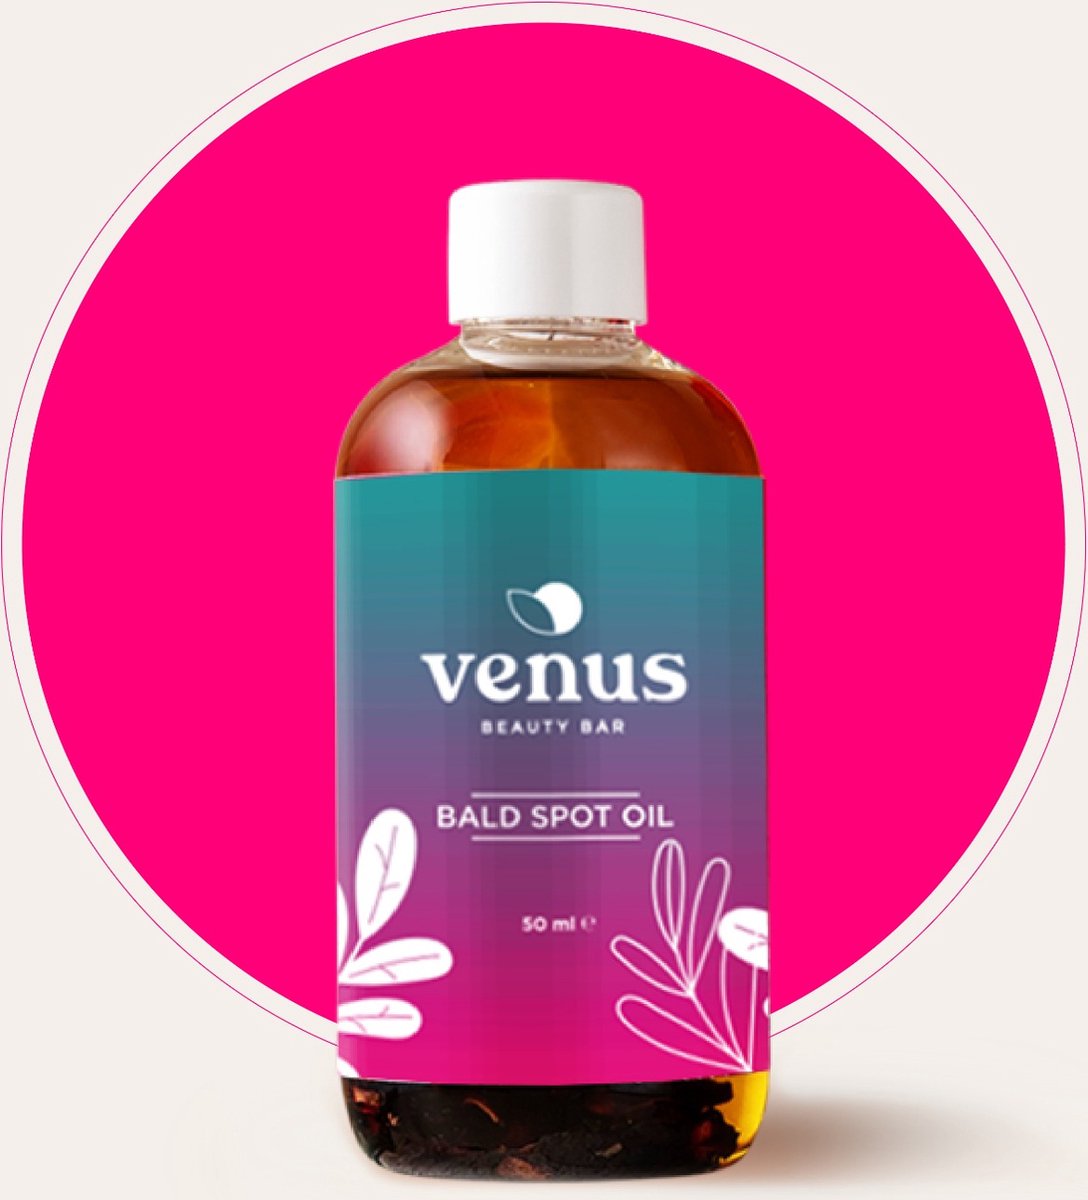 Venus Bald spot oil - kale plekken - haargroei - 100% natural haarolie - 50ml